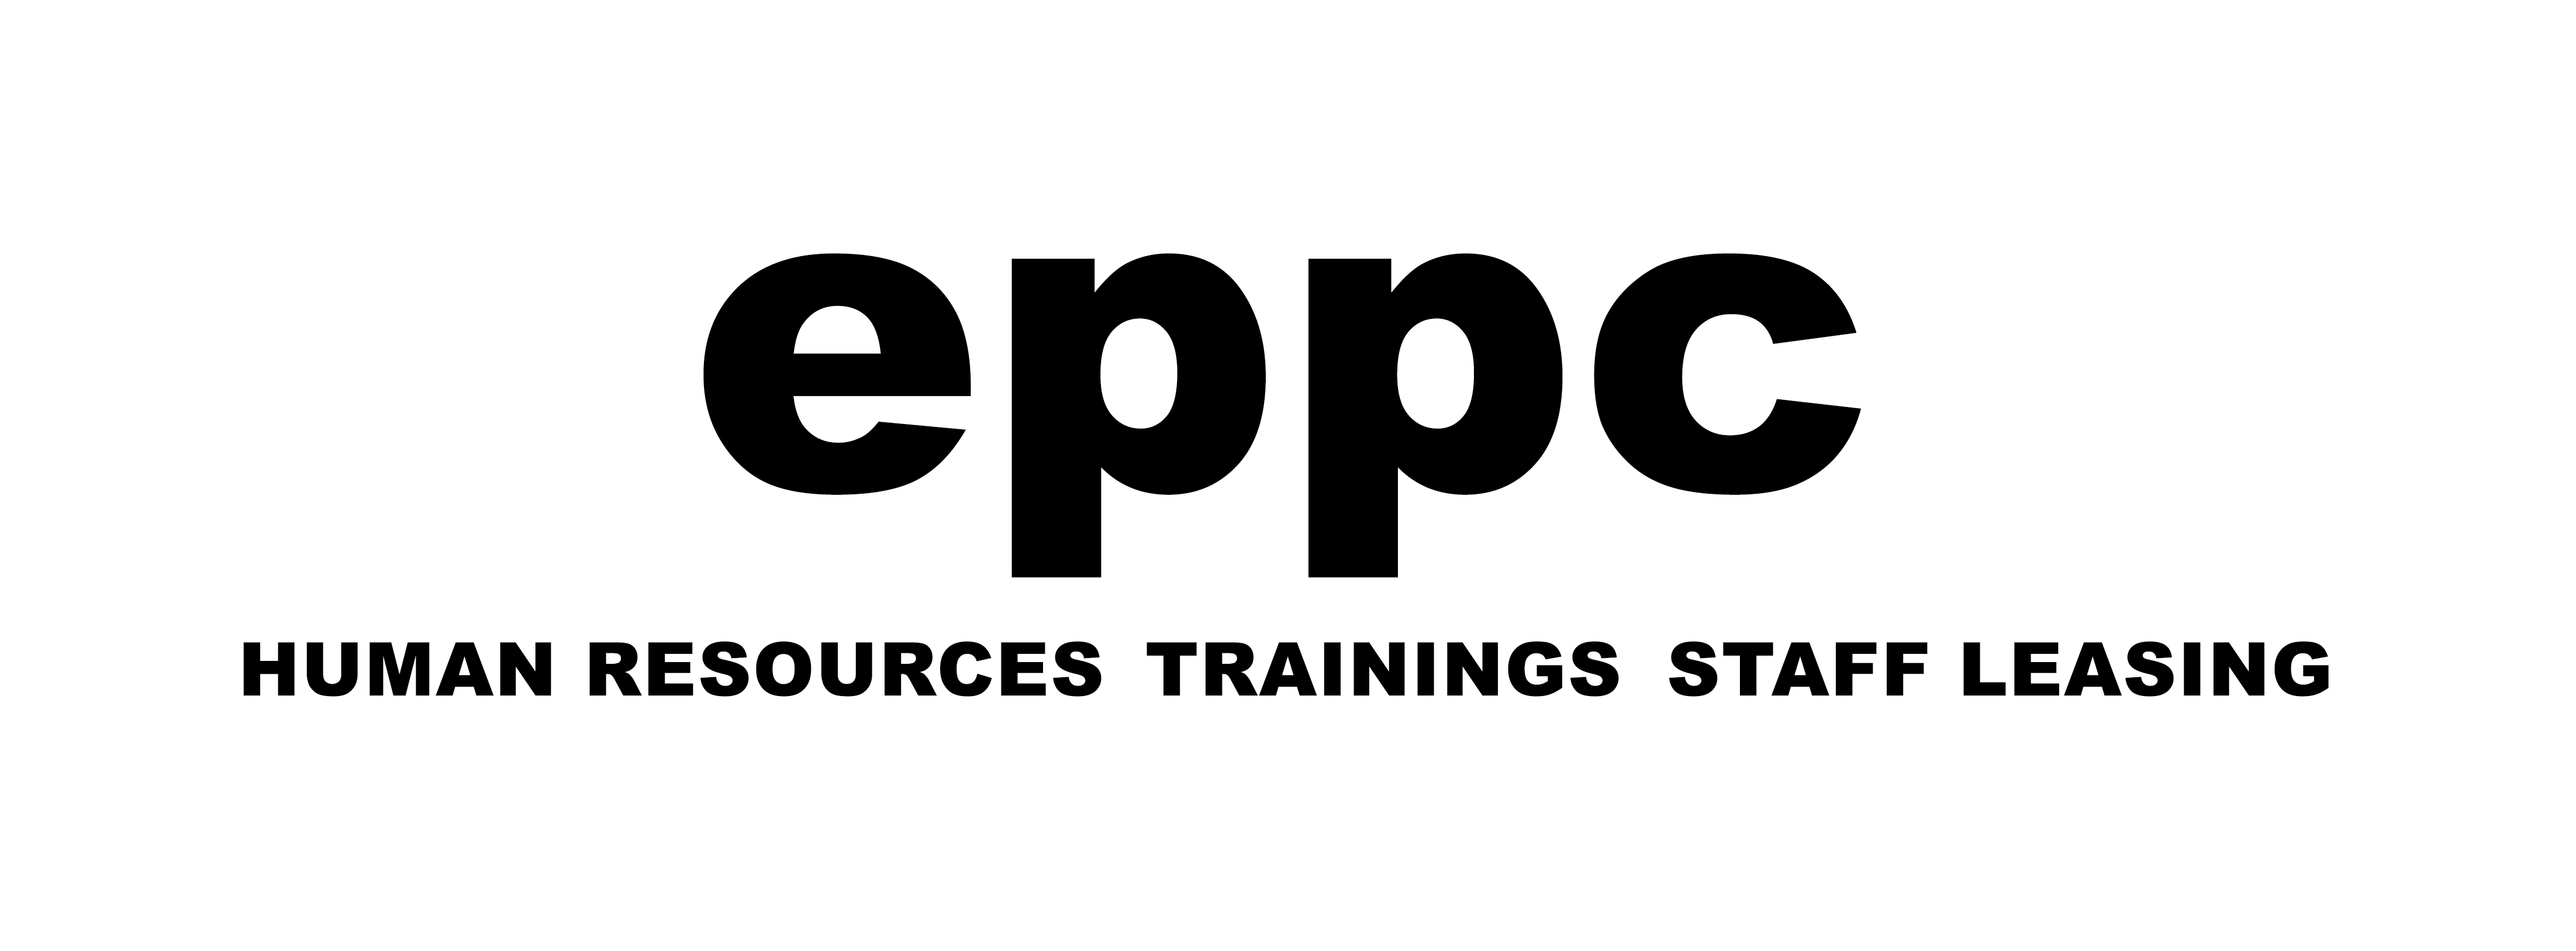 EPPC